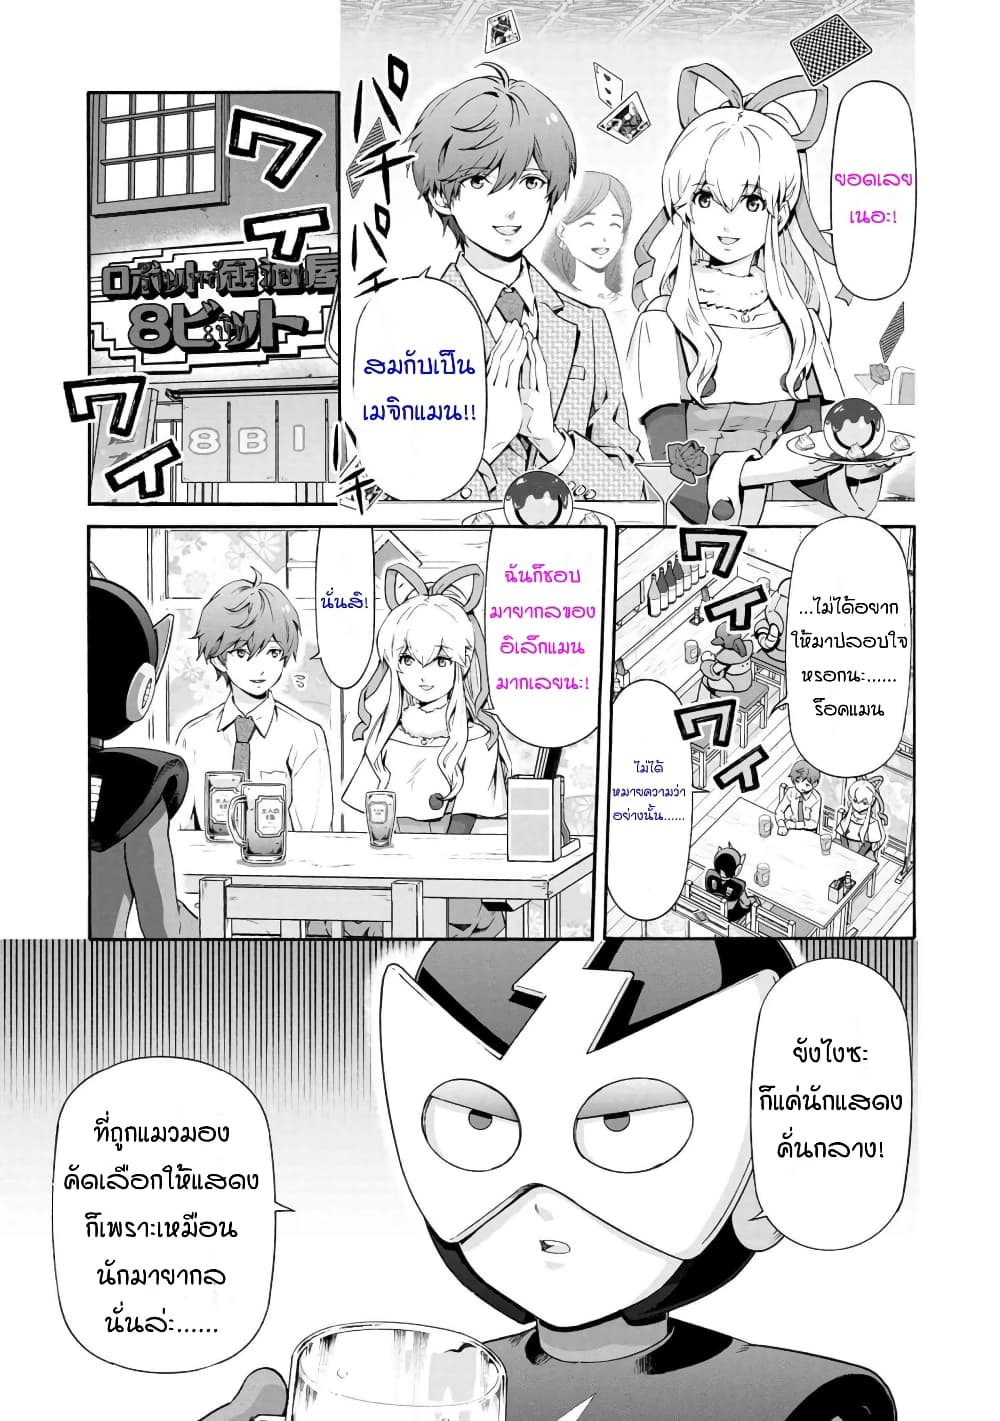 Rockman-chan & Rockman-san 「ร็อคแมนจัง」＆「ร็อคแมนซัง」 2.2-ร็อคแมนซัง ตอนที่ 2 ความเศร้าโศกของอิเล็กแมน